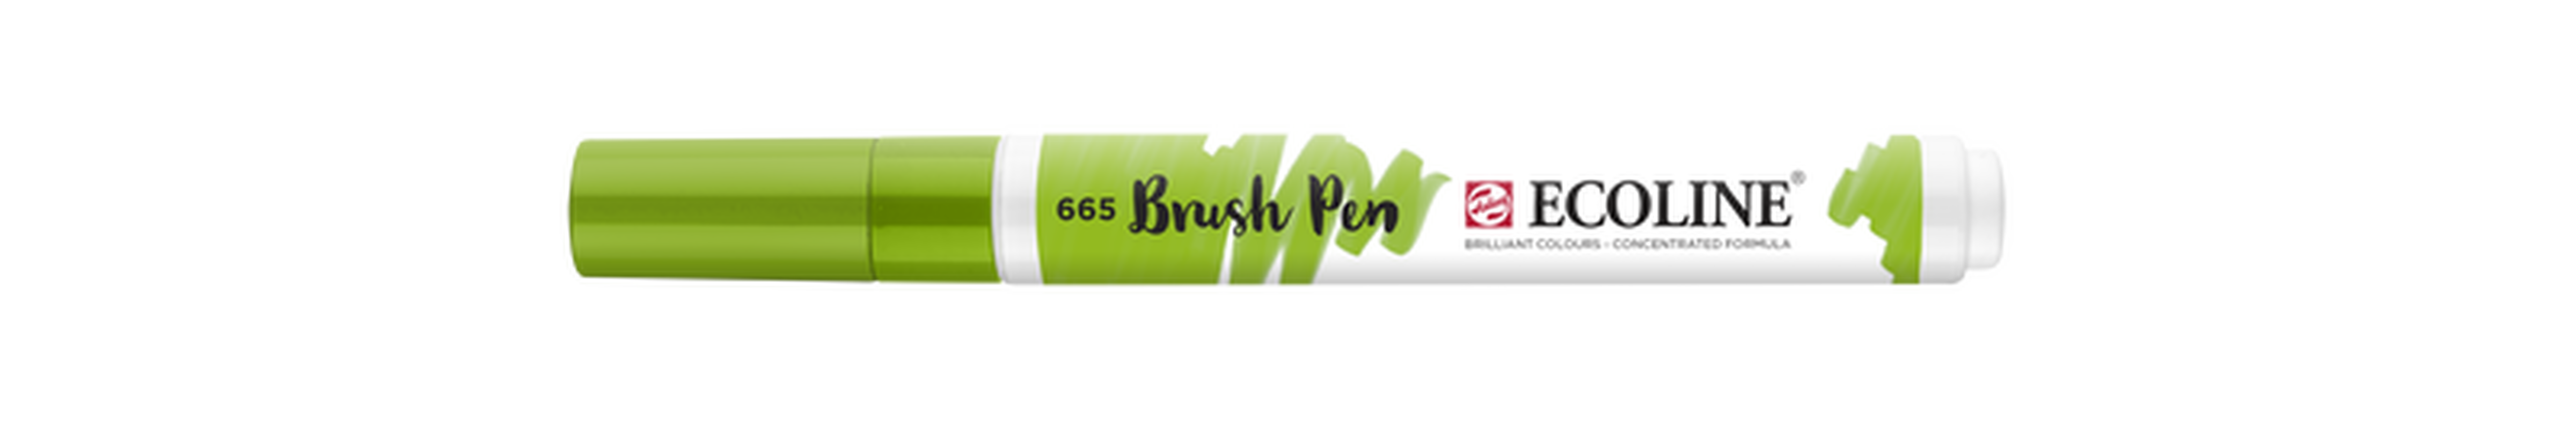 Talens Brush Pen Ecoline Number 665 Color Spring Green